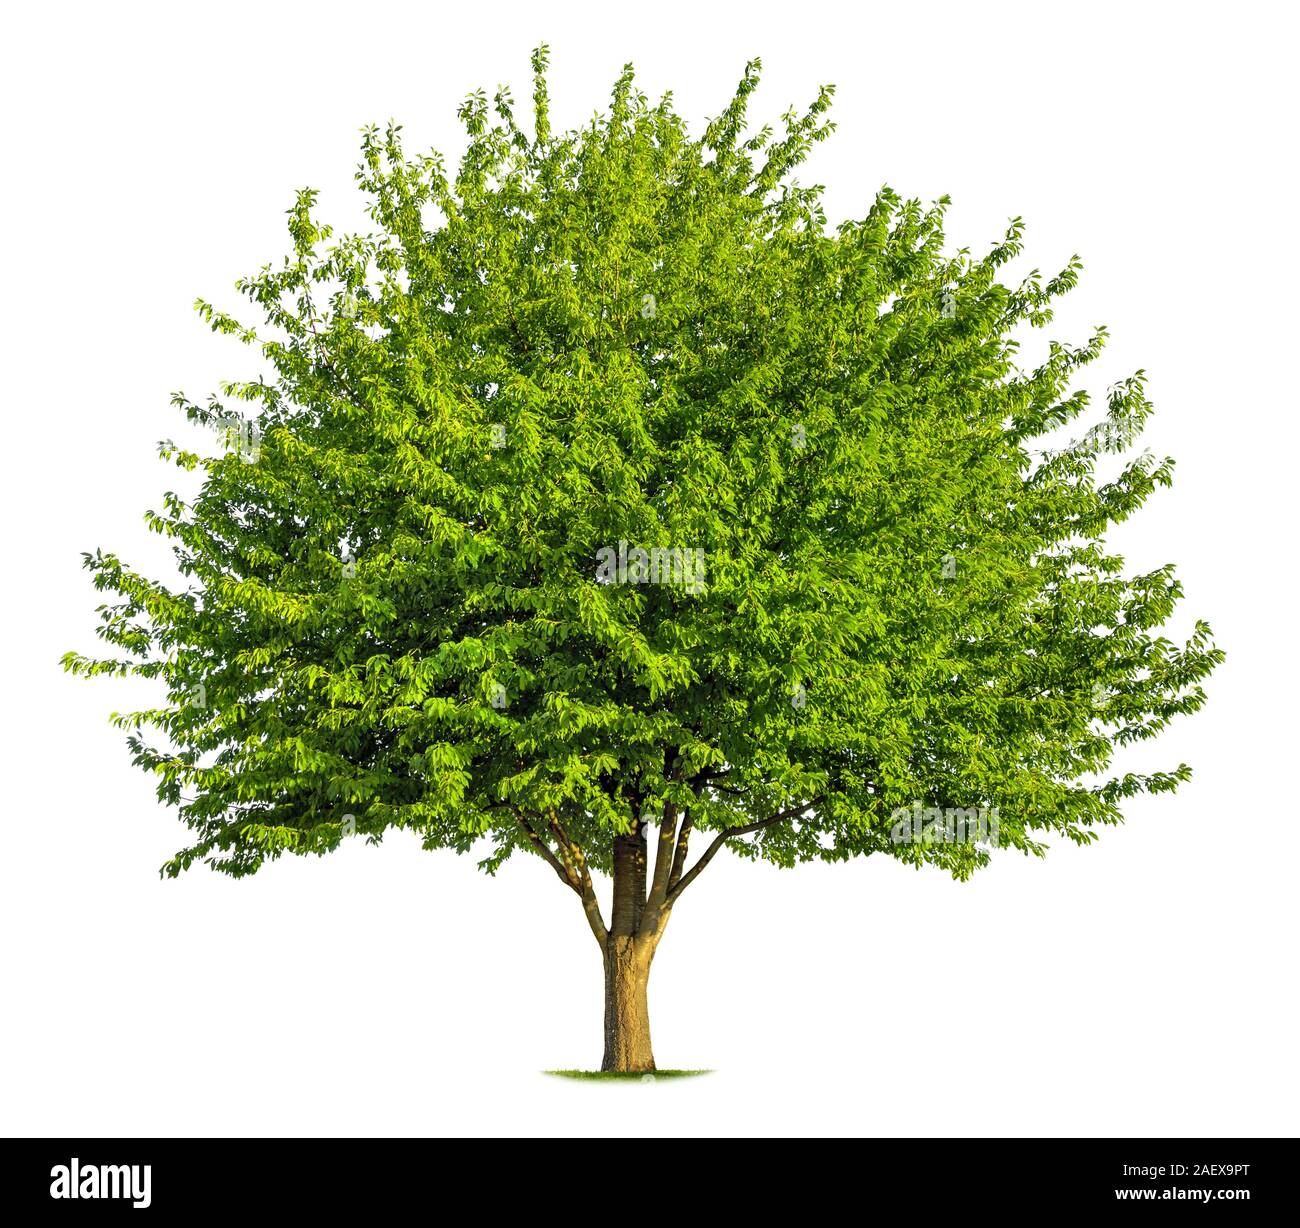 Bel arbre à feuilles caduques vert frais isolé sur fond blanc, pur Banque D'Images